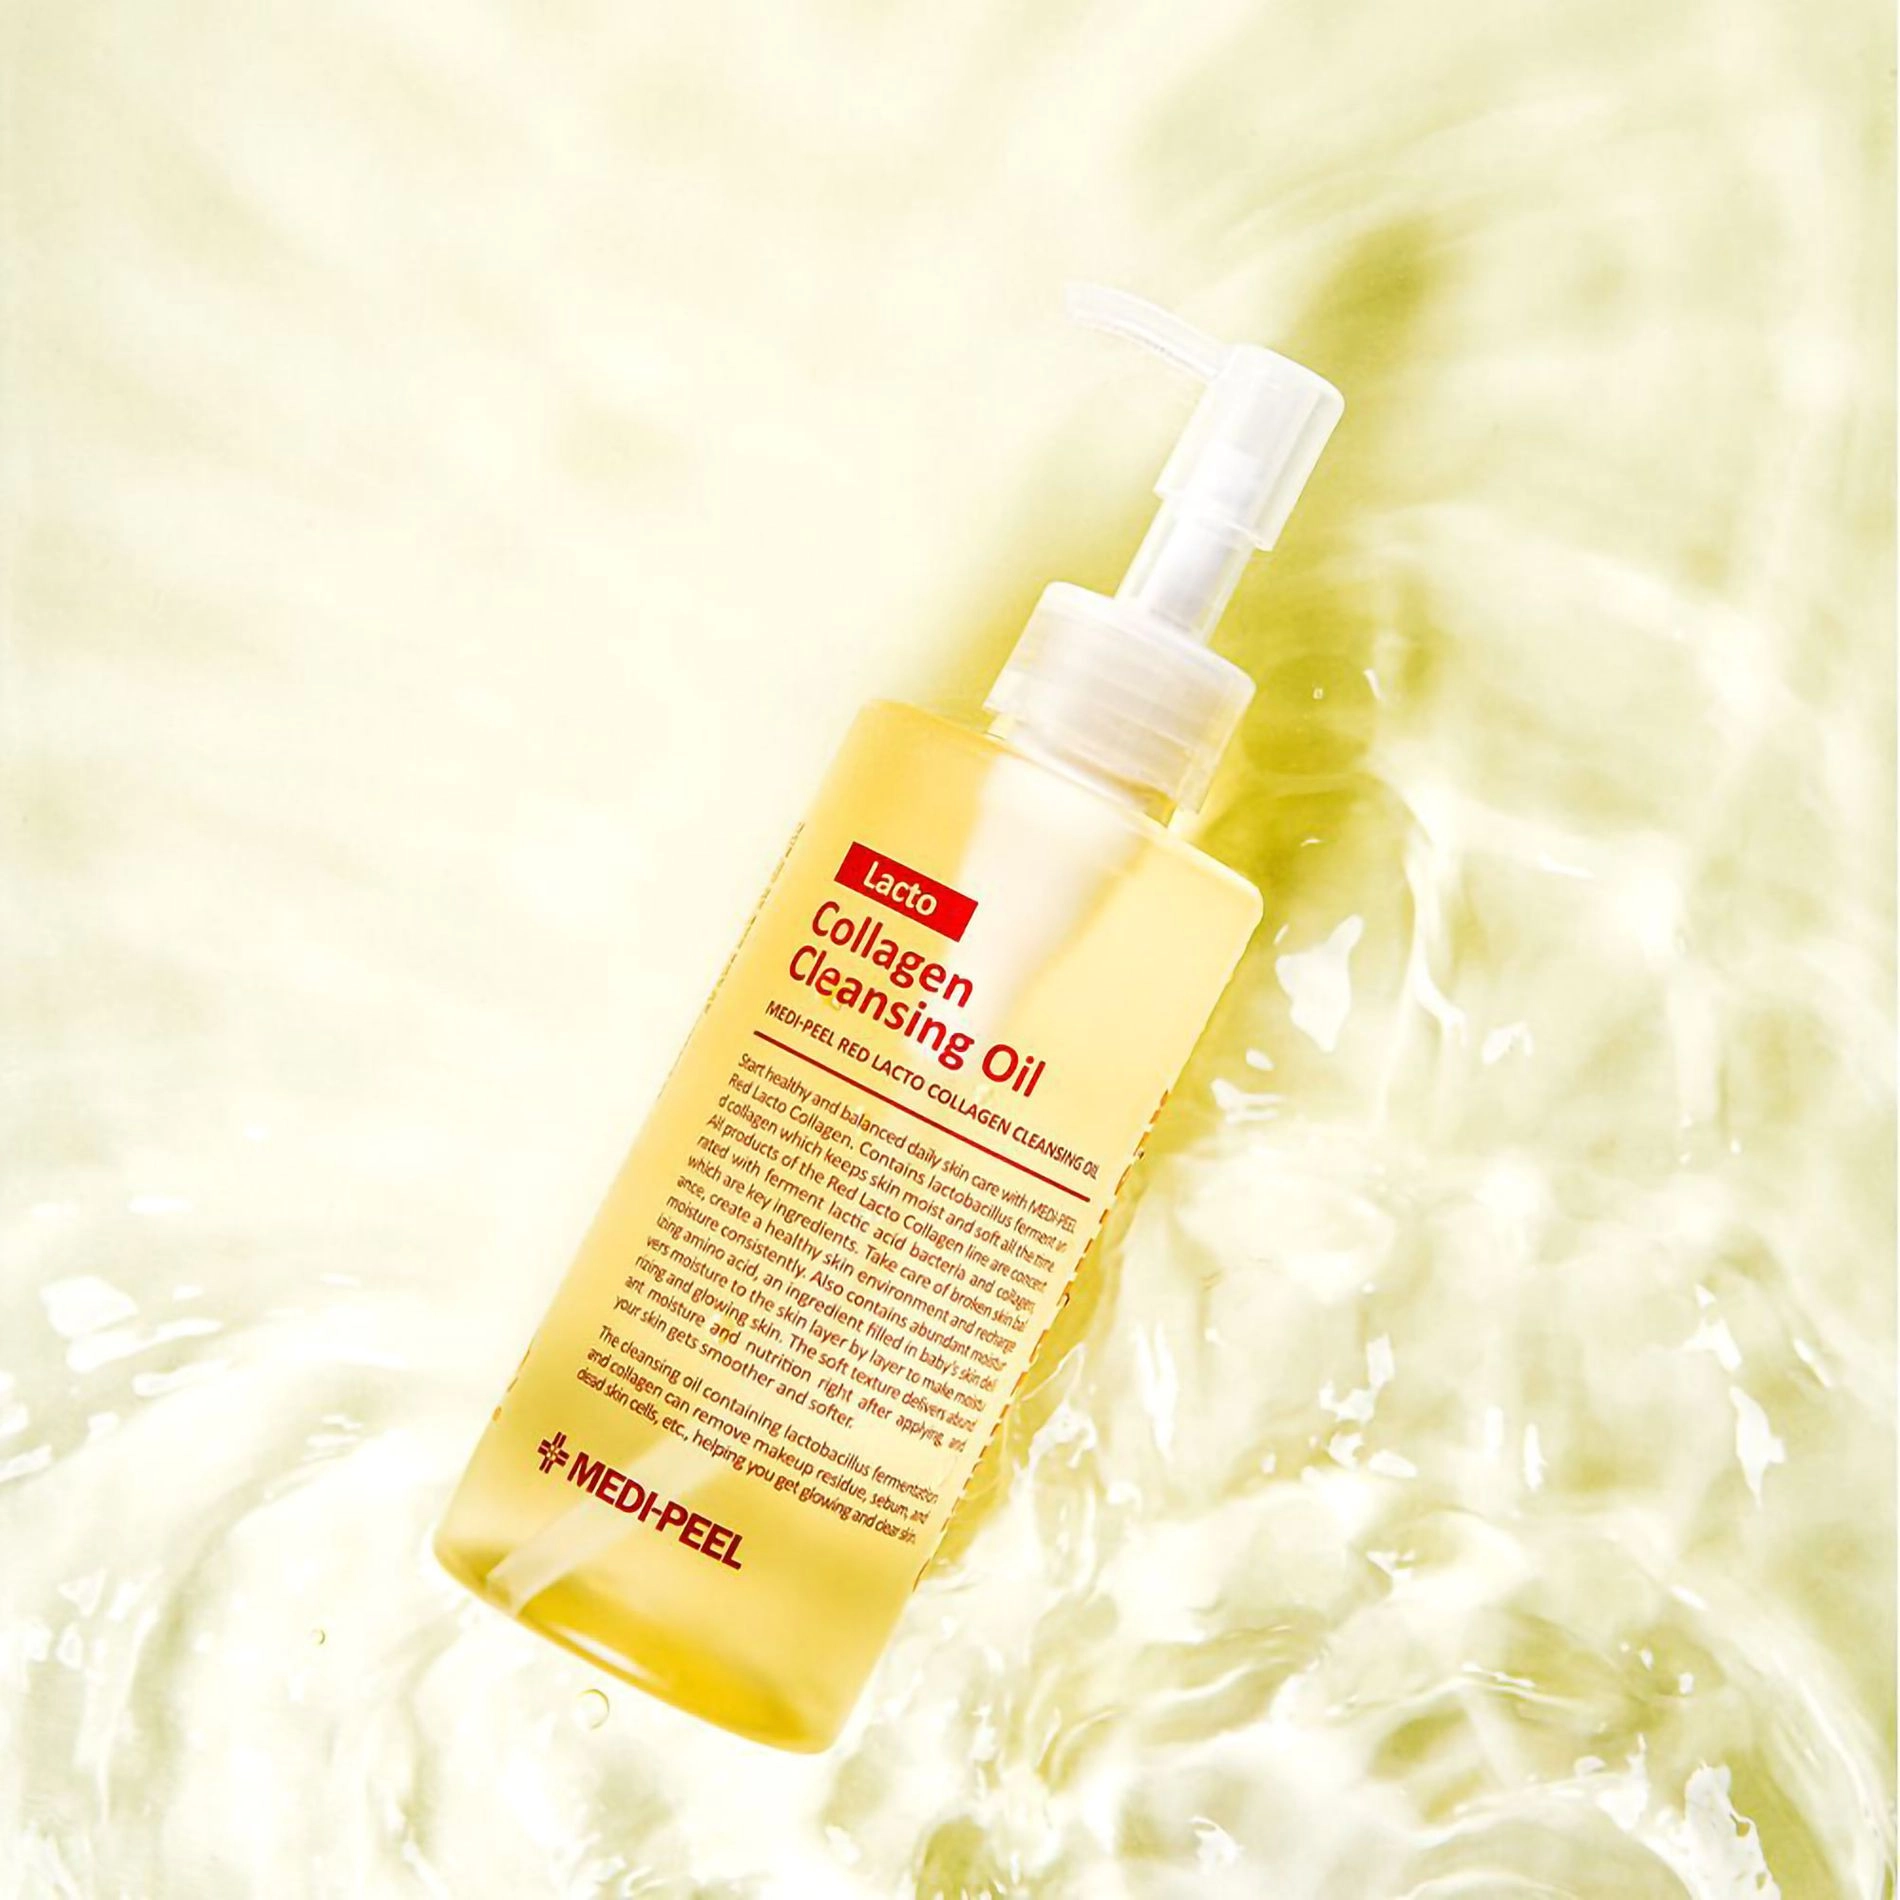 Гидрофильное масло с пробиотиками и коллагеном - Medi peel Red Lacto Collagen Cleansing Oil, 200 мл - фото N6